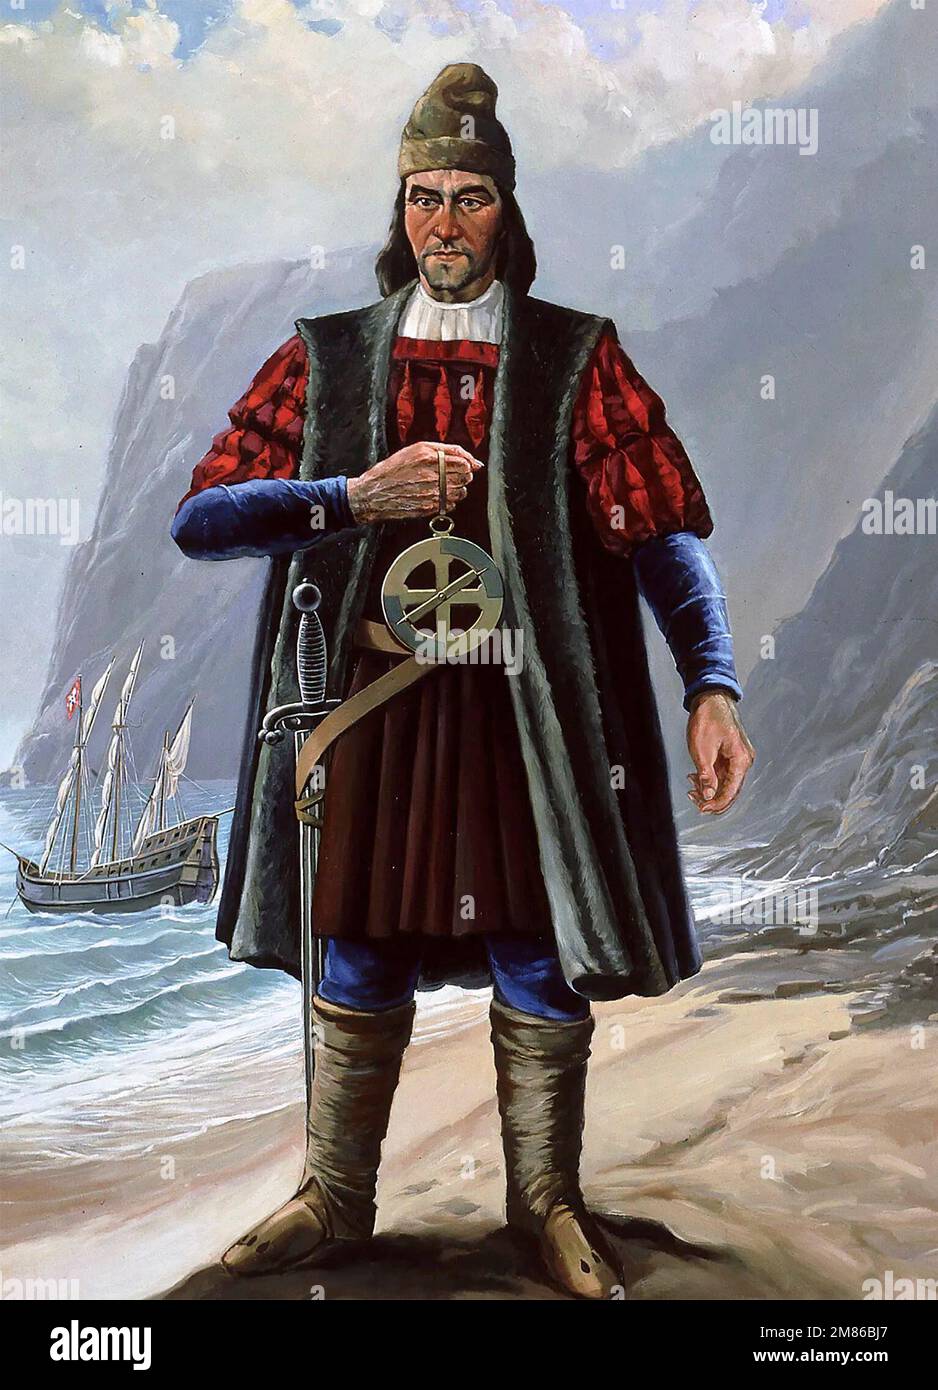 Bartolomeu Dias. Retrato del explorador y marinero portugués, Bartolomeu Dias (c. 1450-1500). Dias fue la primera persona en navegar alrededor del extremo sur de África en 1488. Foto de stock